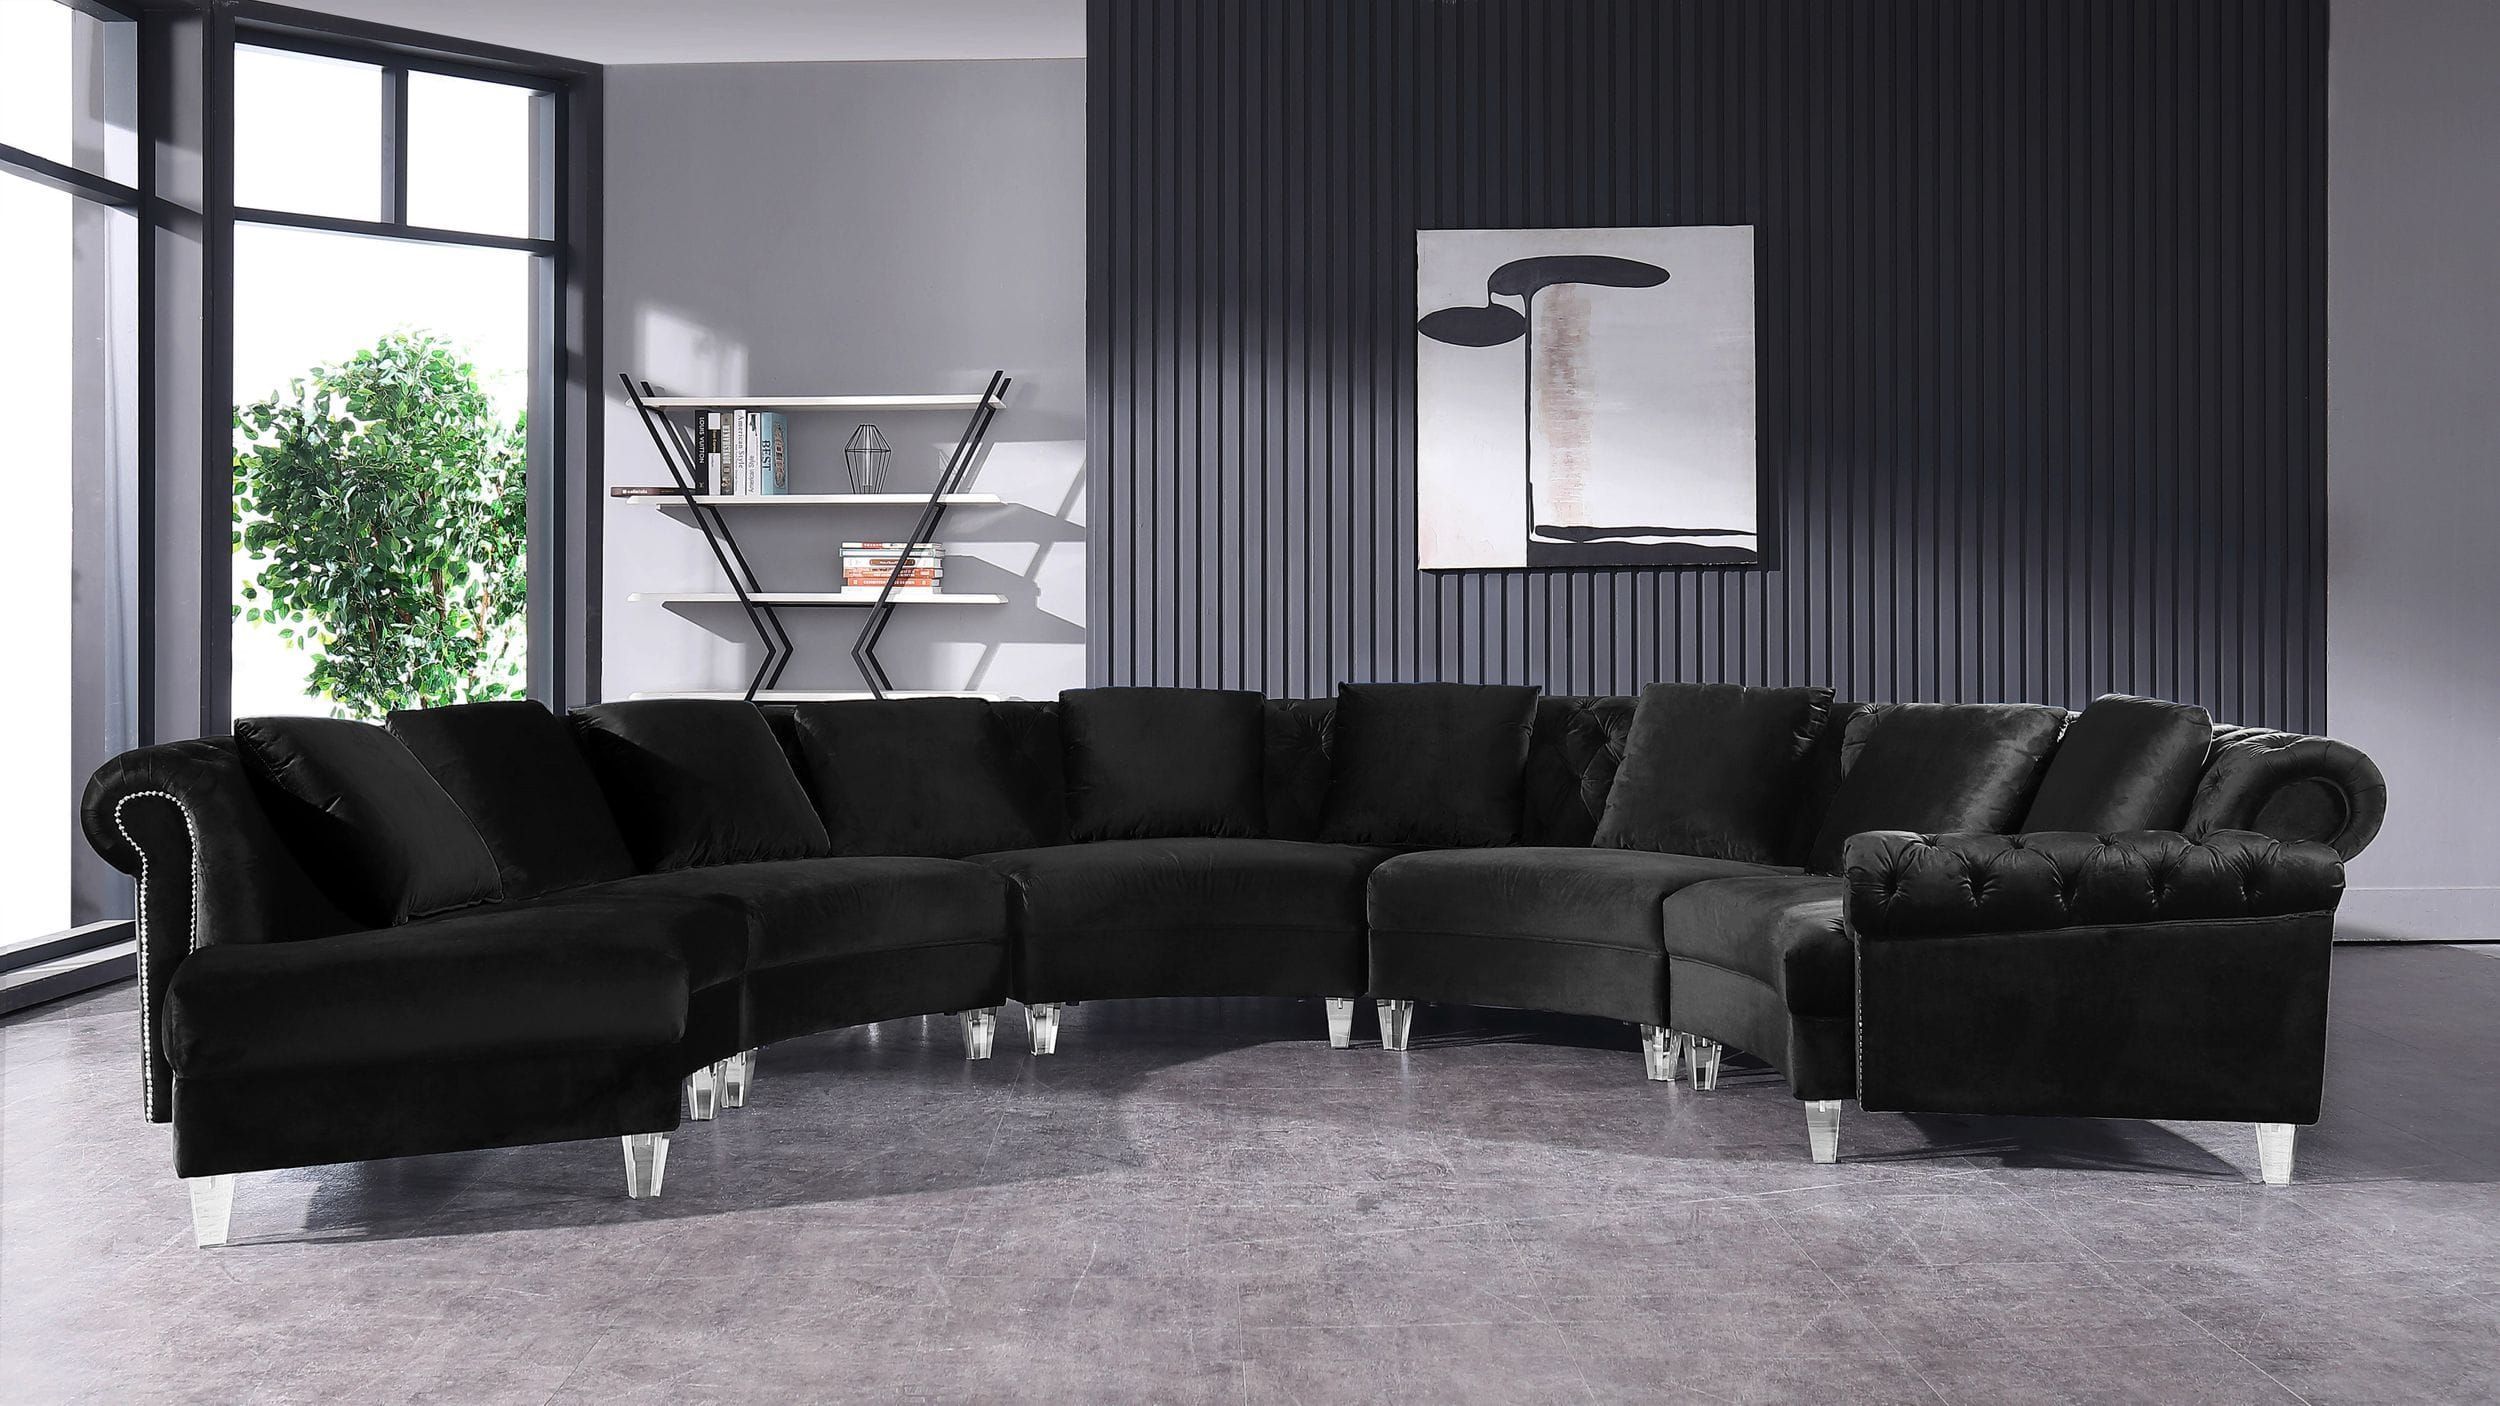 Divani Casa Darla – Modern Black Velvet Circular Sectional Sofa Intended For Sofas In Black (View 8 of 15)